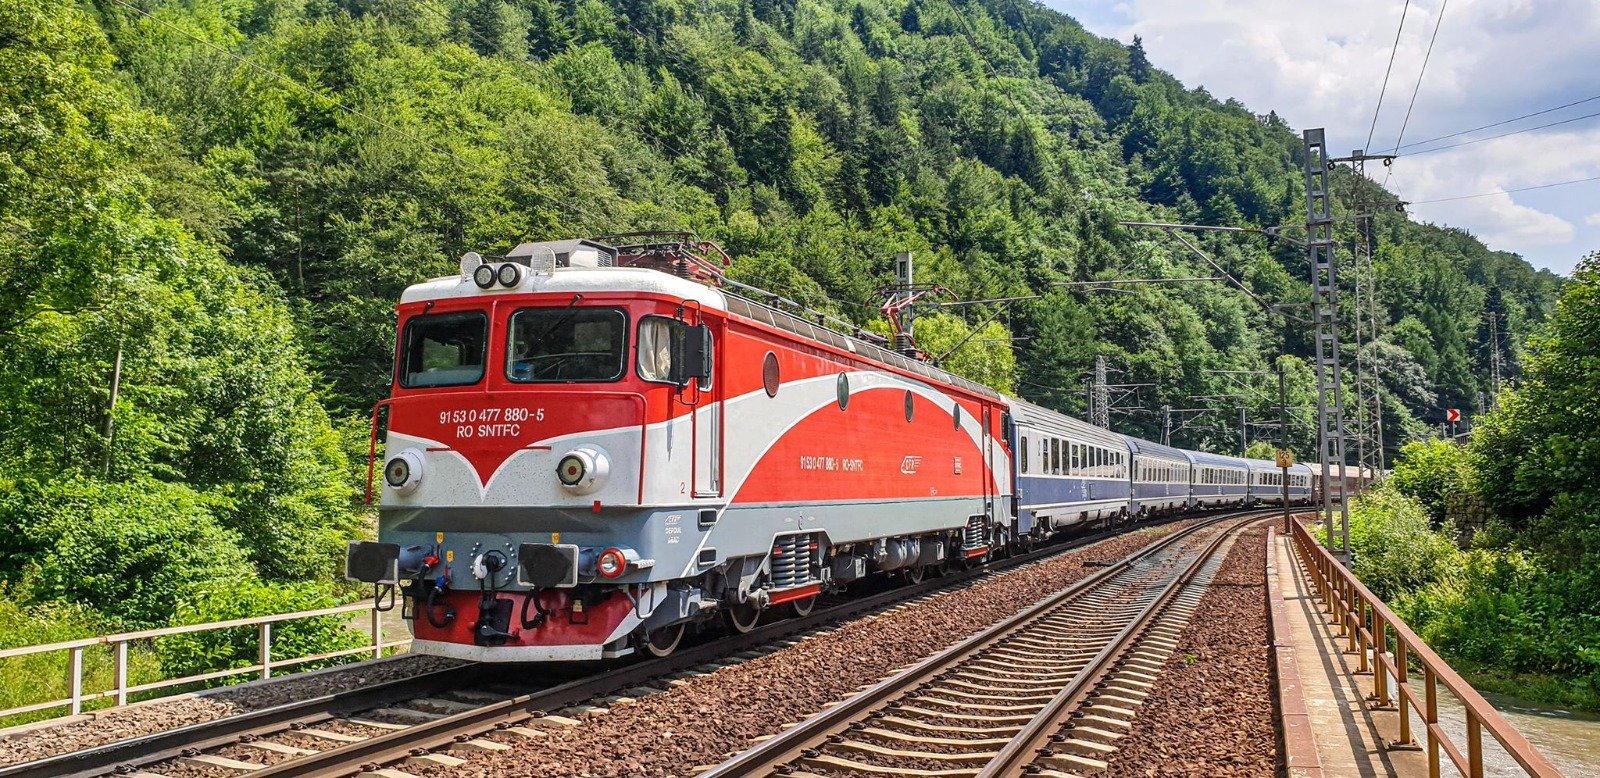 Guvernul a adoptat un proiect care vizează modernizarea a 55 locomotive electrice pentru remorcarea trenurilor de călători şi conversia a 20 de locomotive diesel hidraulice în locomotive electrice